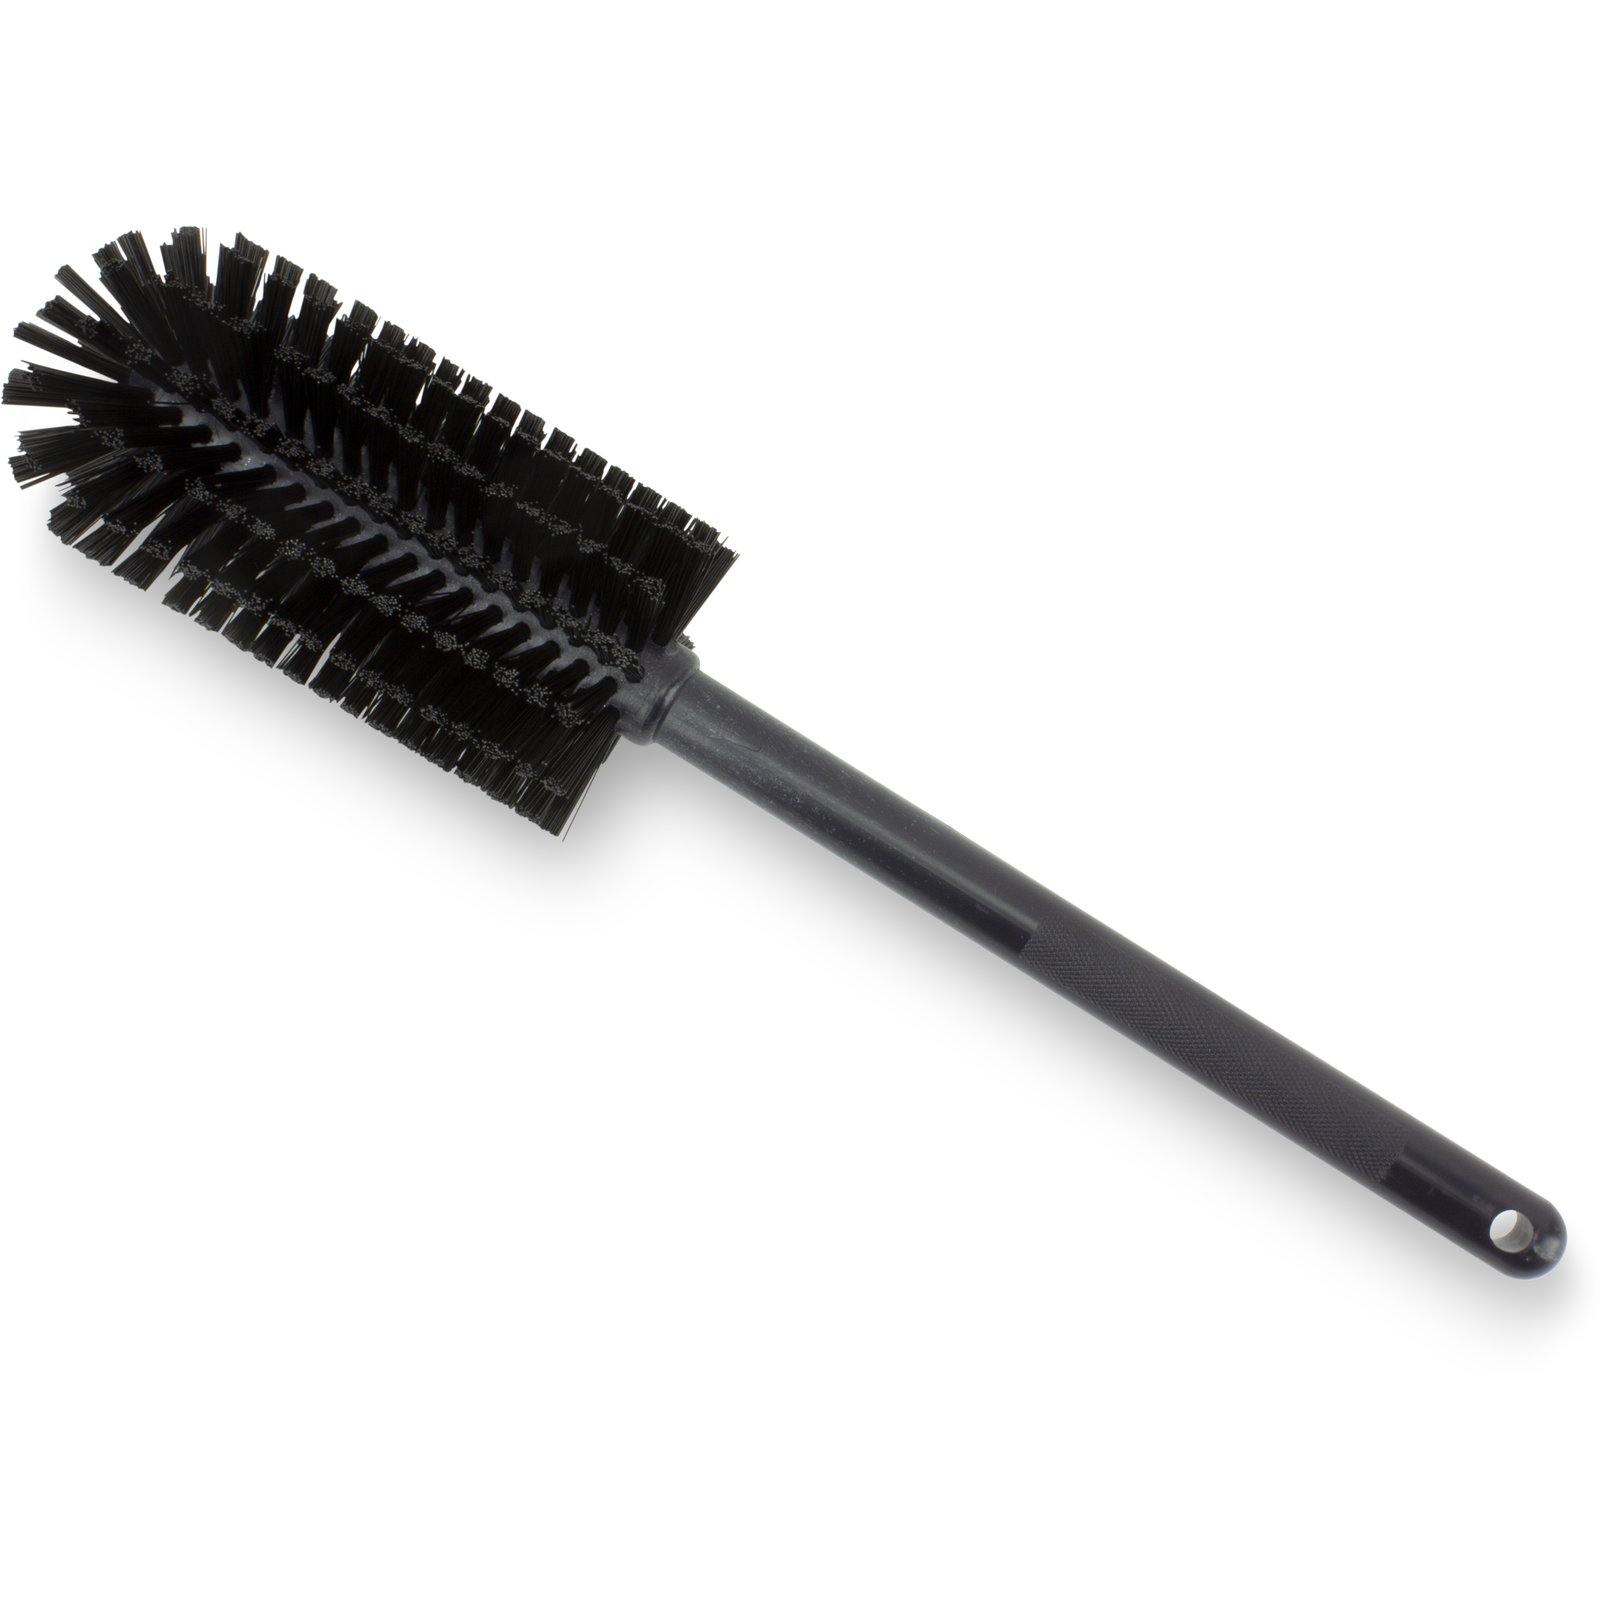 Remco ColorCore 428119 7 3/8 Black Dish Brush with Medium Bristles